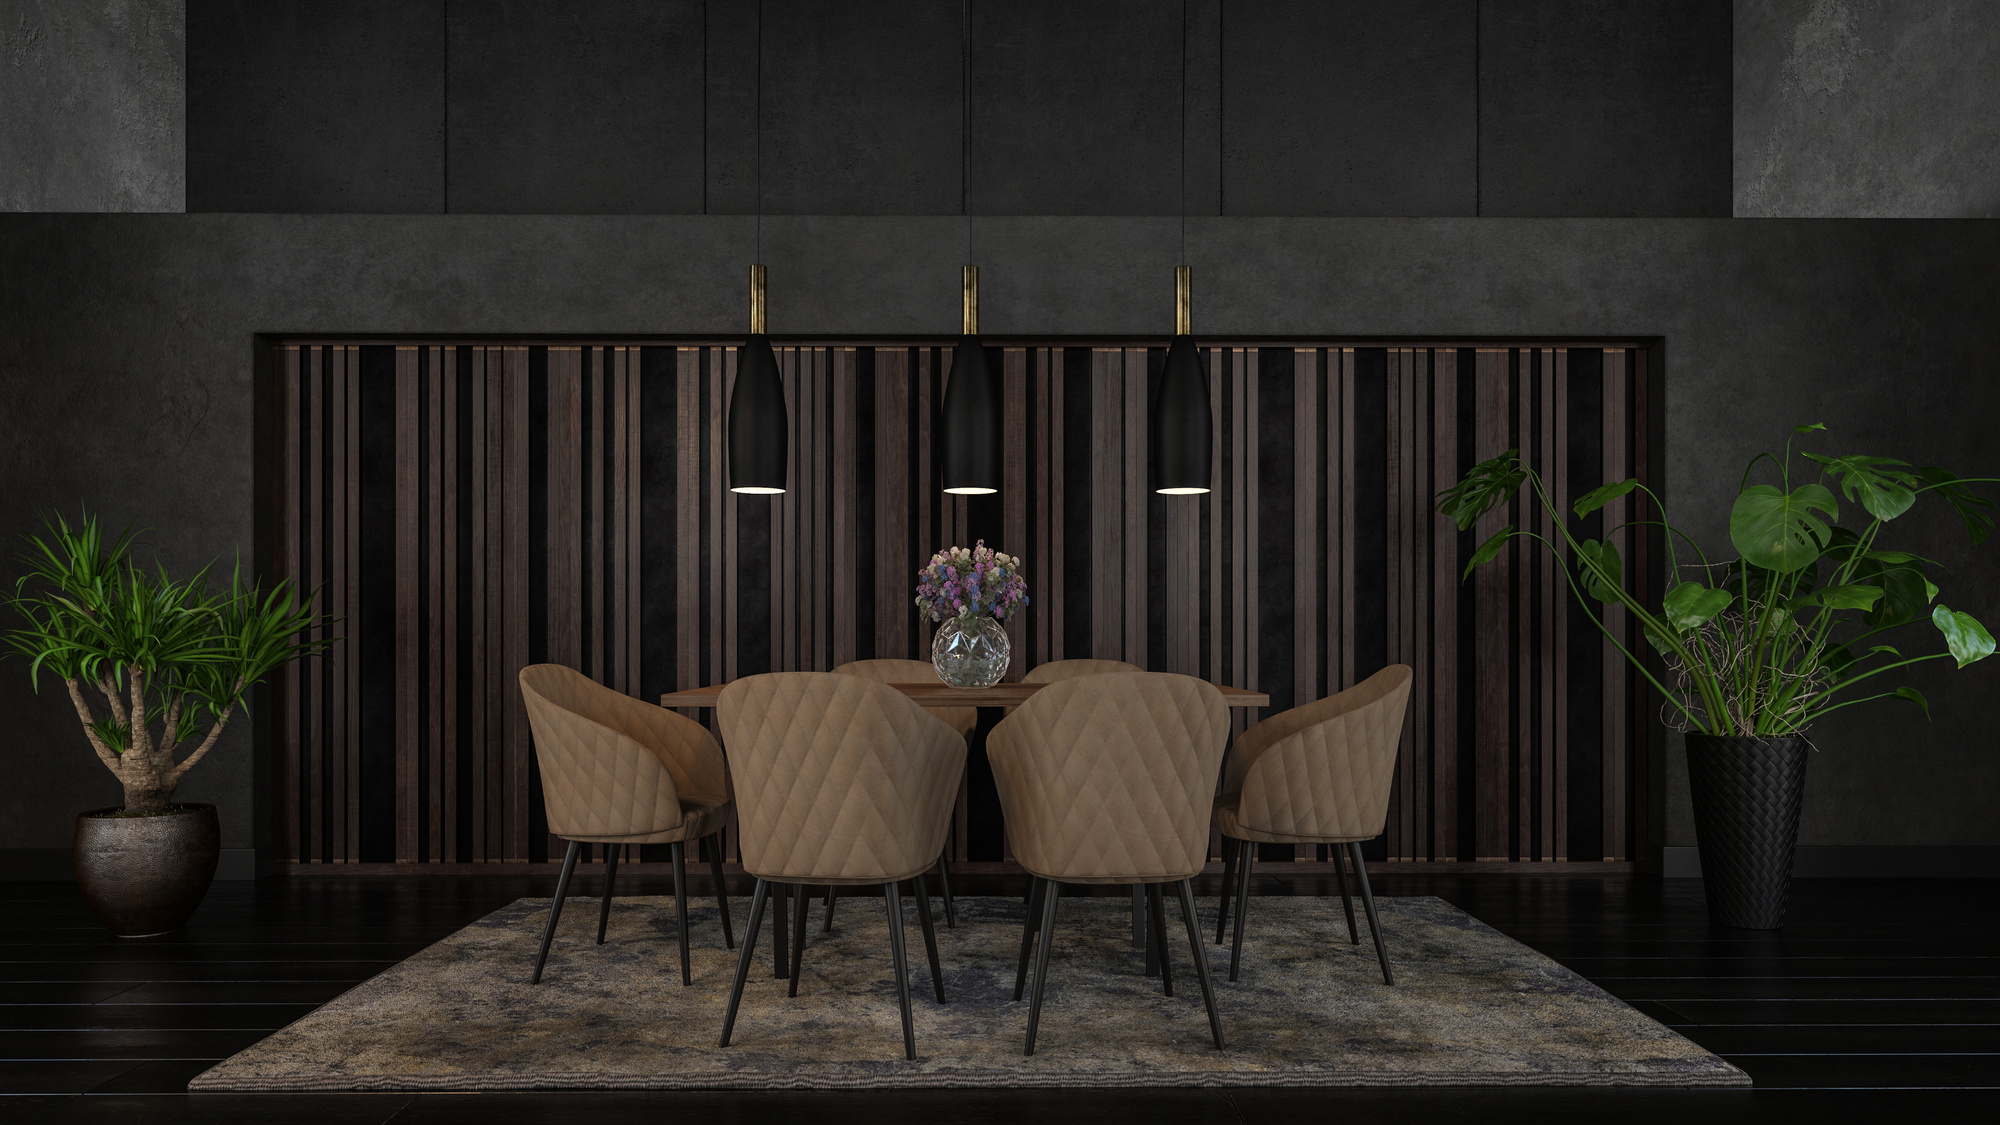 Luxury Dining Room Interior in Dark Design